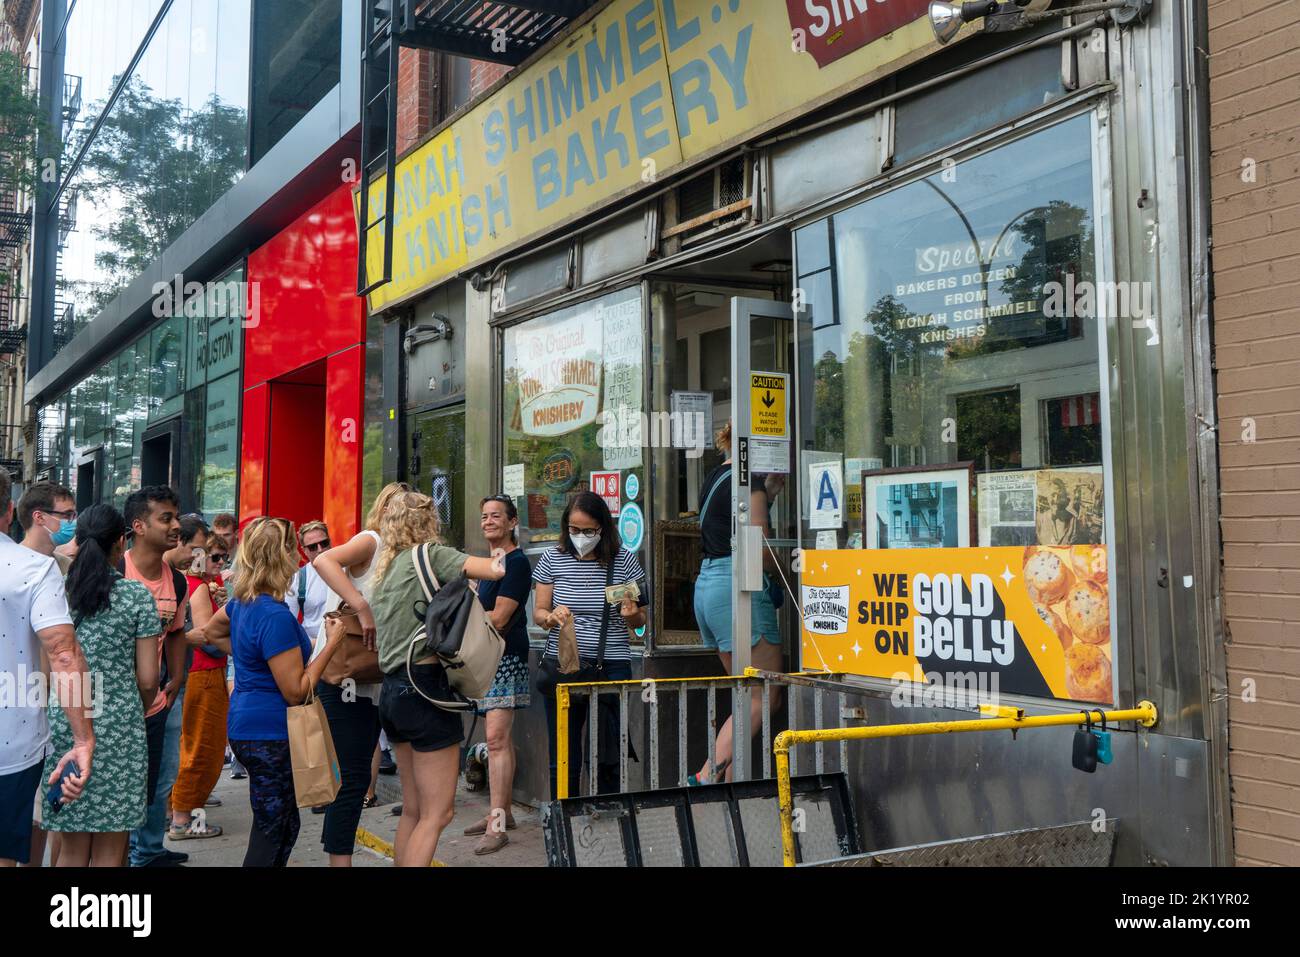 Die Bäckerei Yonah Schimmel knish befindet sich seit 1910 auf der Lower East Side von Manhattan. Es ist eines der letzten jüdischen Geschäfte jener Zeit, das überlebt hat. Stockfoto